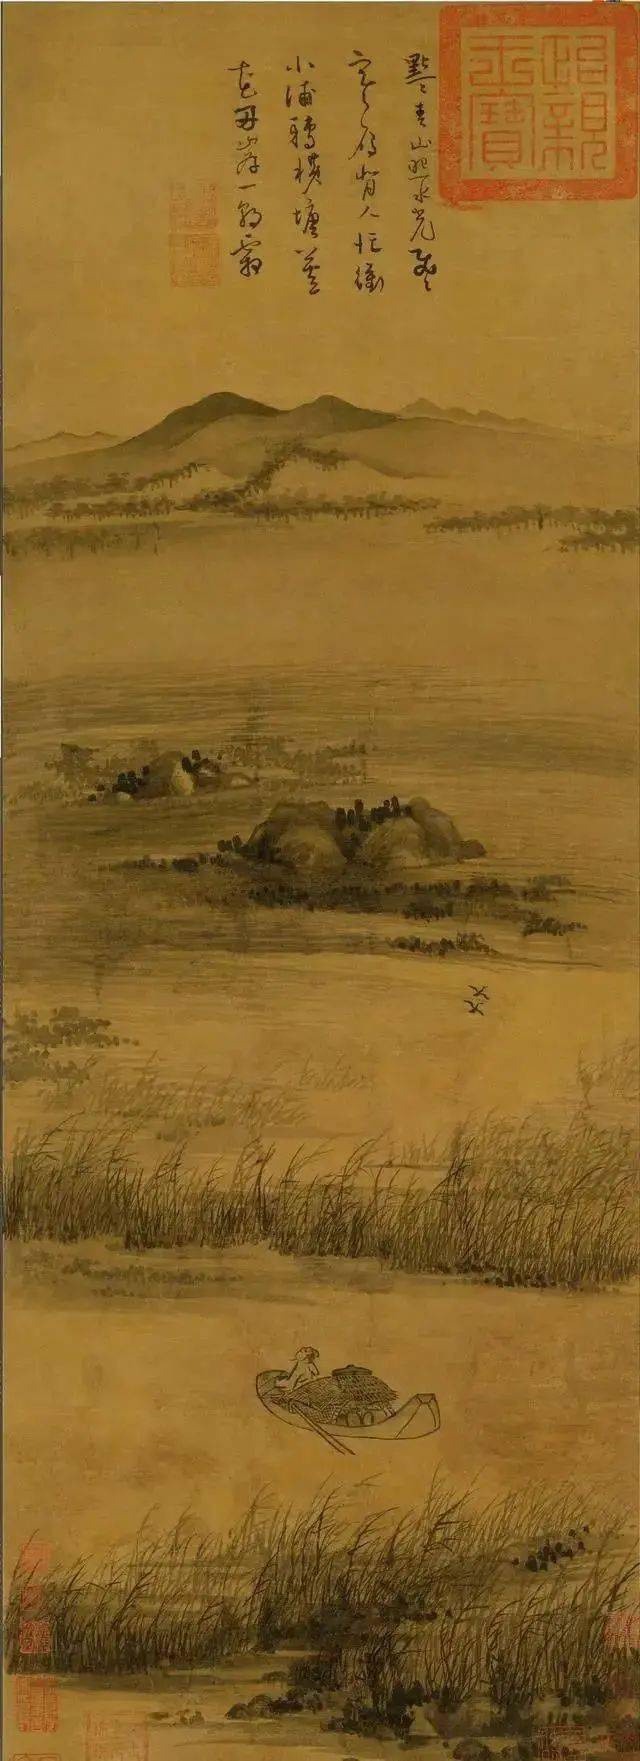 《淮扬洁秋图》是石涛的代表作之一,该幅作品描绘的是淮扬秋景.